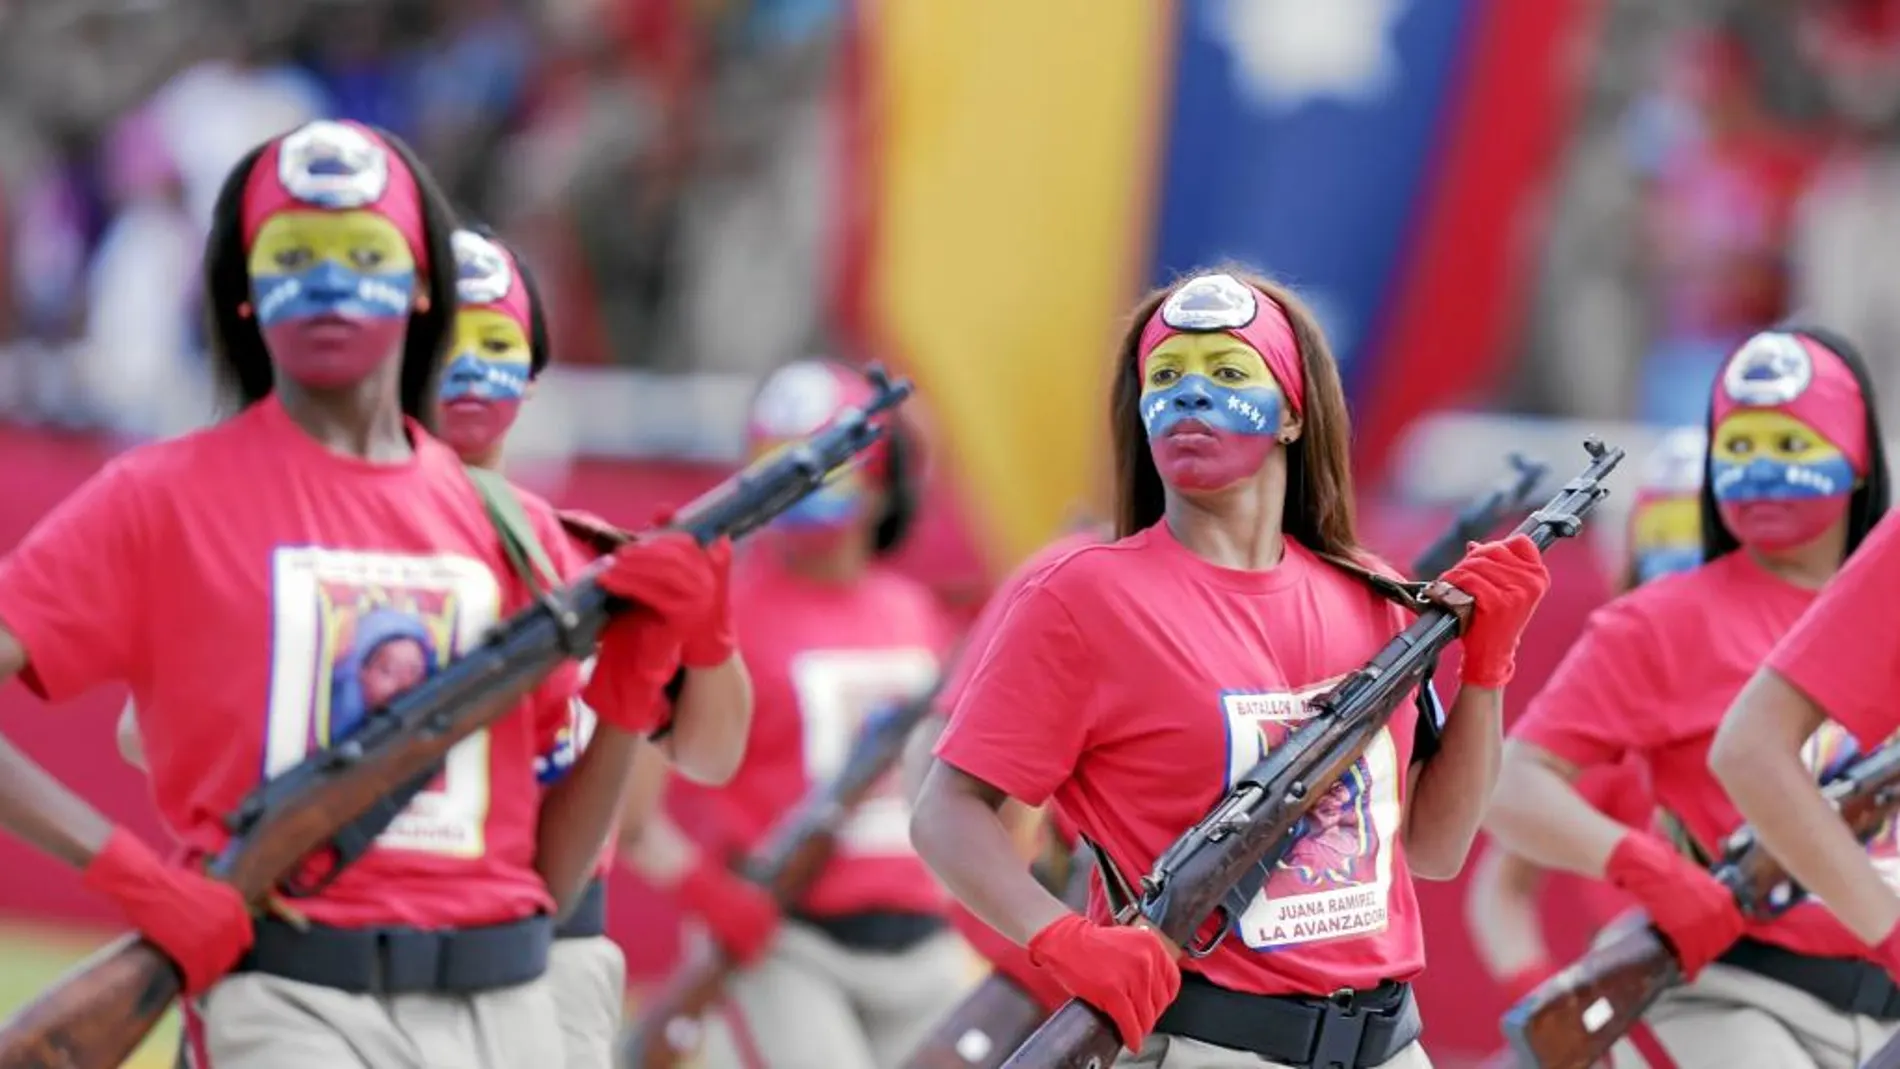 Mujeres con la cara pintada con los colores de la bandera venezolana, desfilan por el aniversario de la independencia